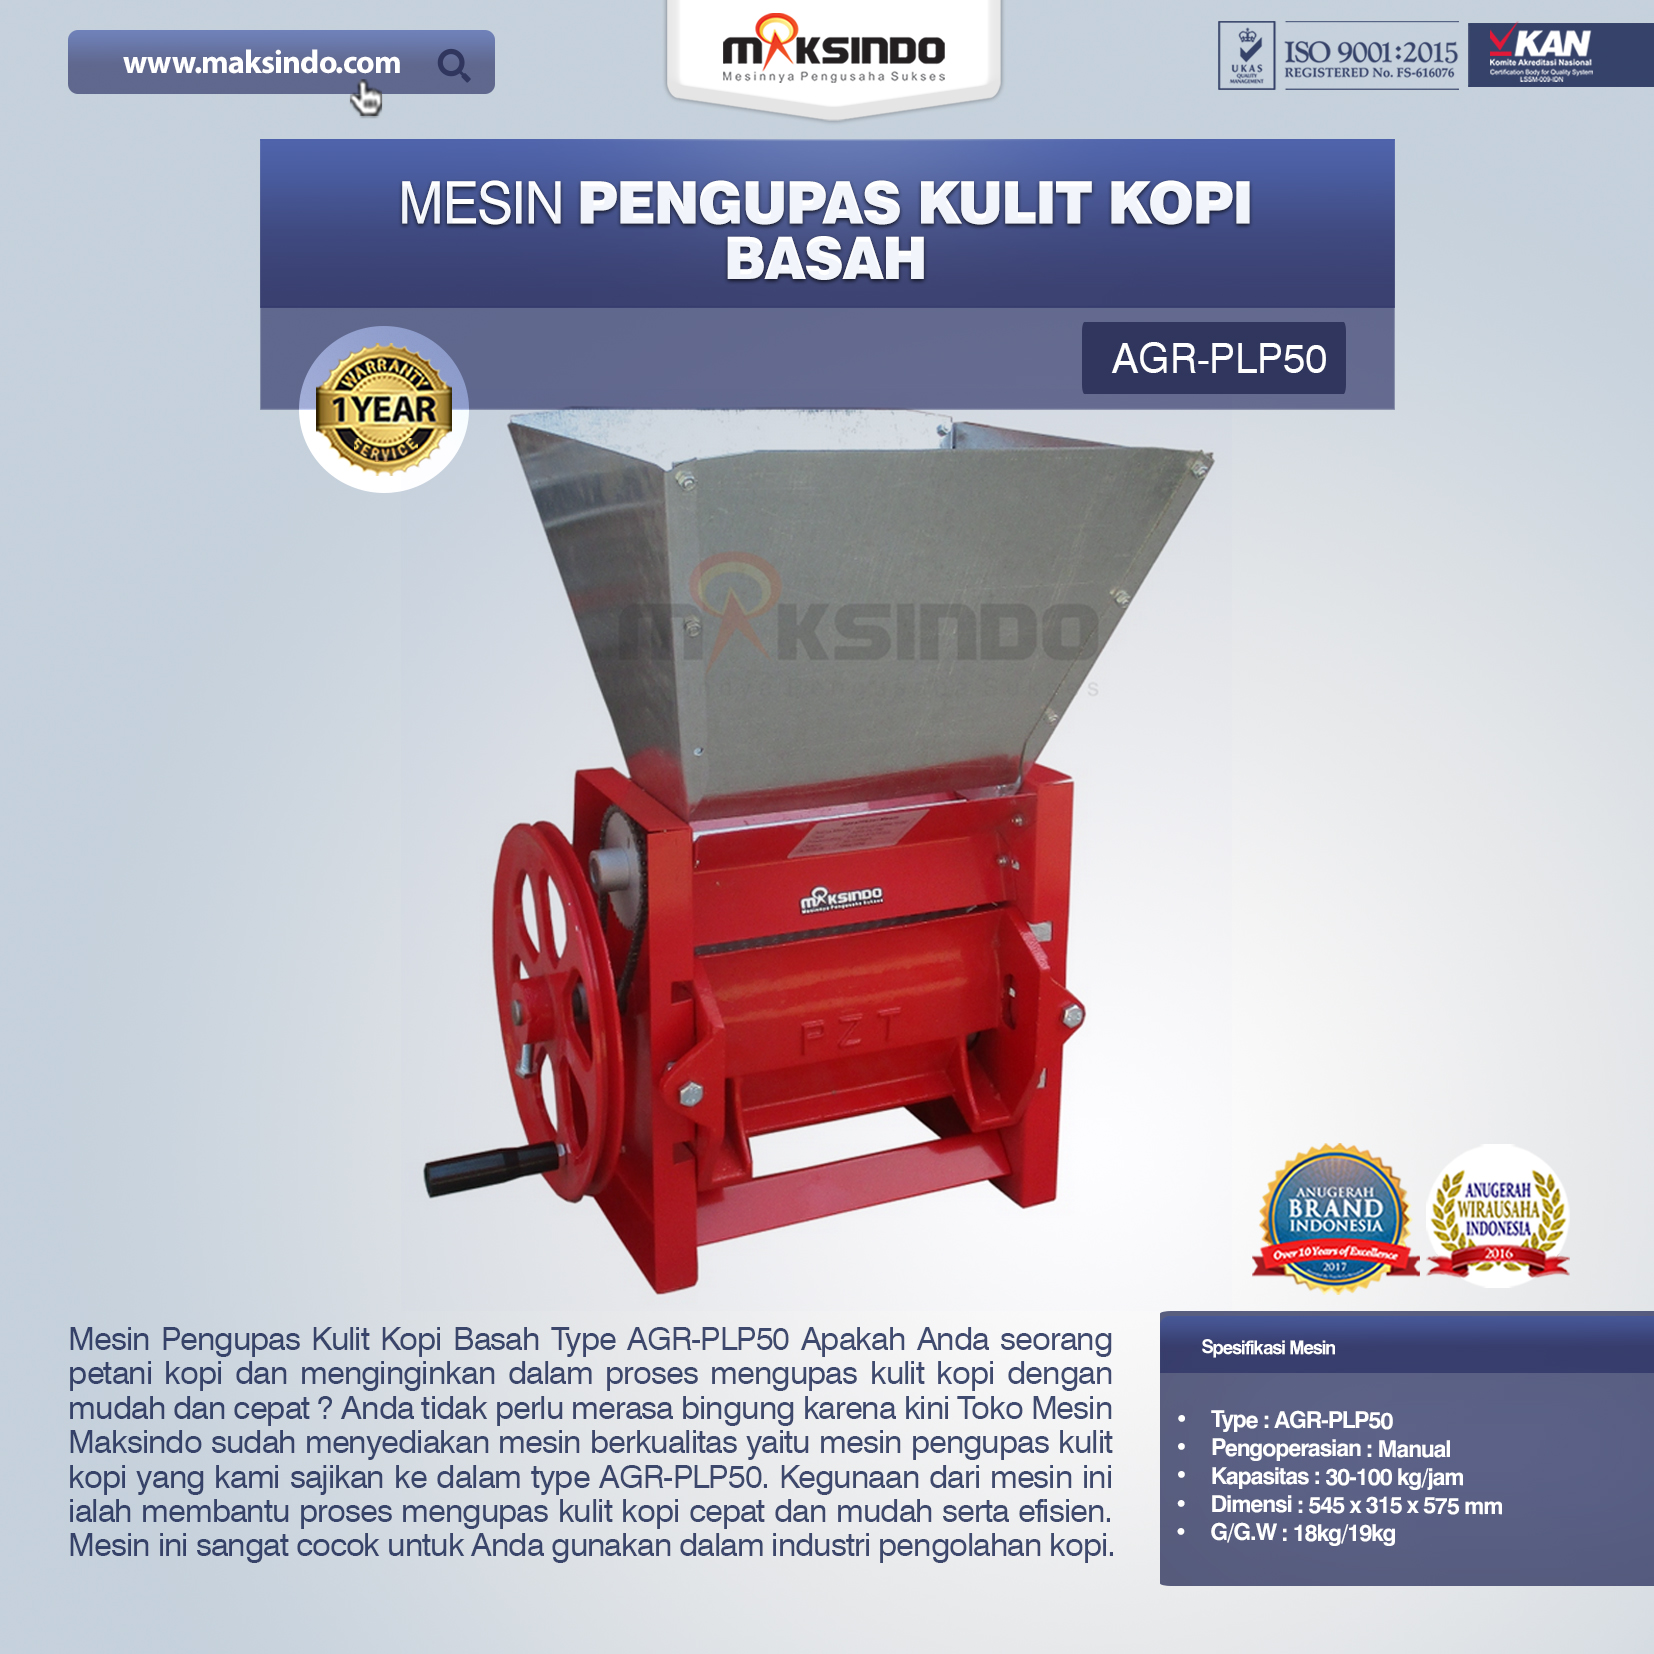 Jual Mesin Pengupas Kulit Kopi Basah Type AGR-PLP50 di Palembang